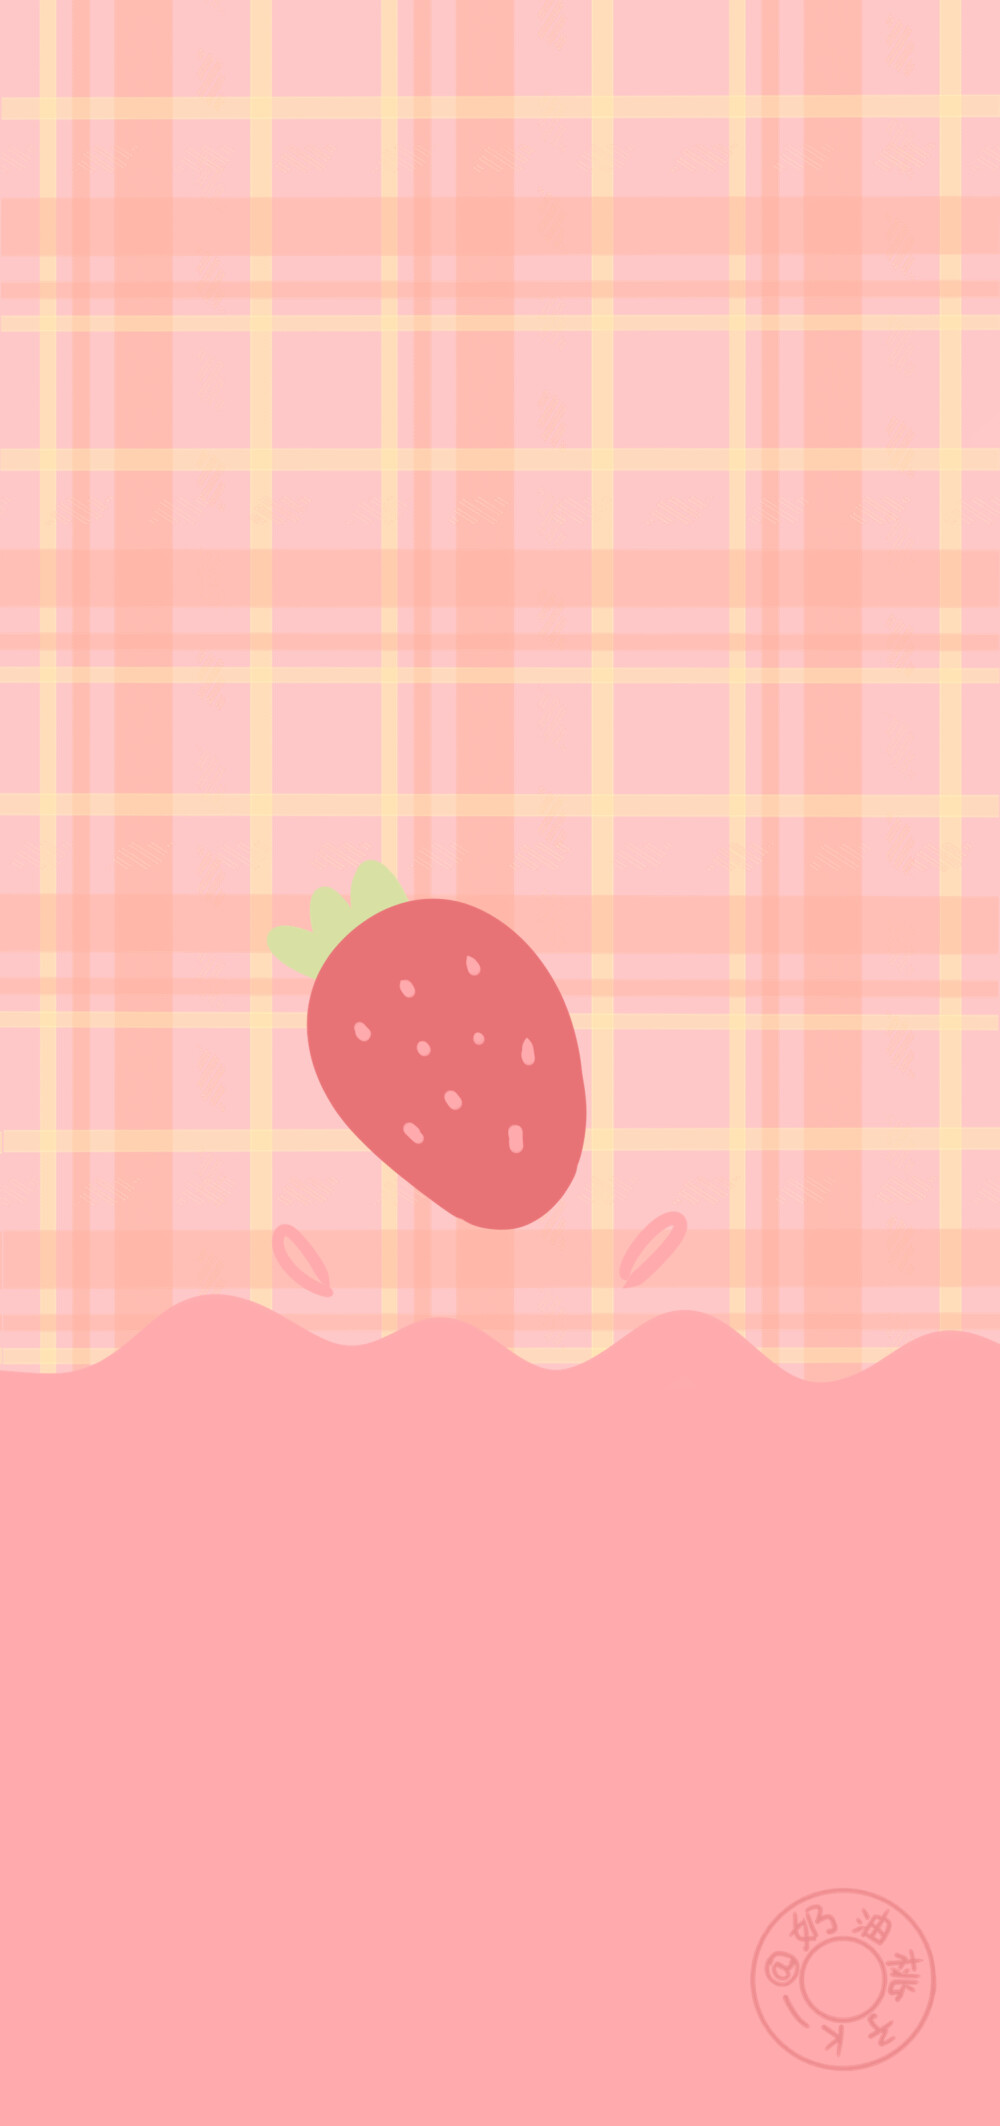 可爱草莓粉色壁纸 cr:奶油桃子k_ #手机壁纸##少女心##插画壁纸##可爱